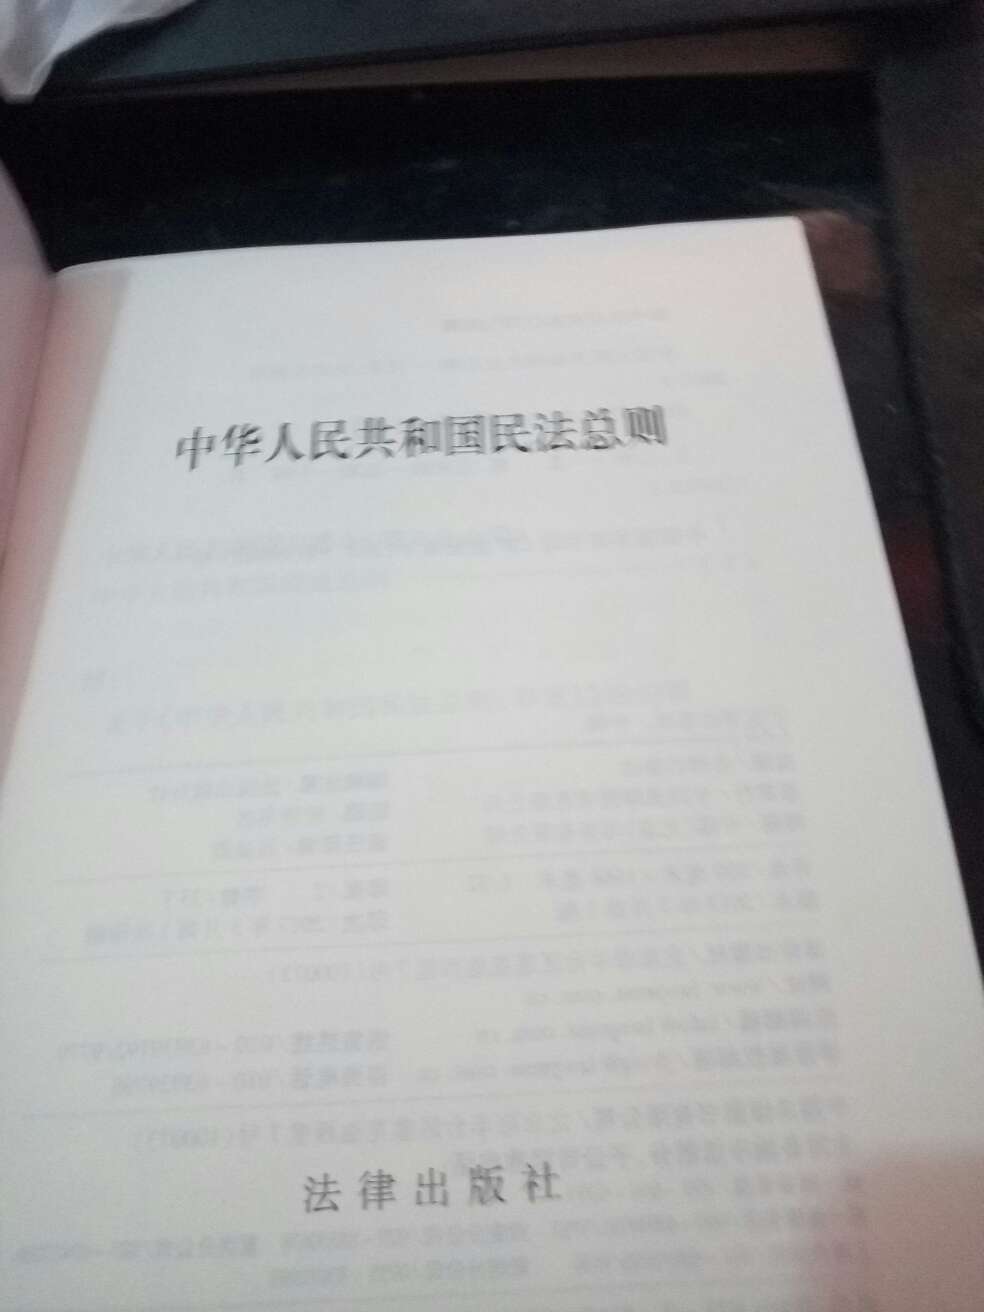 这是最新版的中国人民共和国民法总则，我觉得看看还是很有好处的。